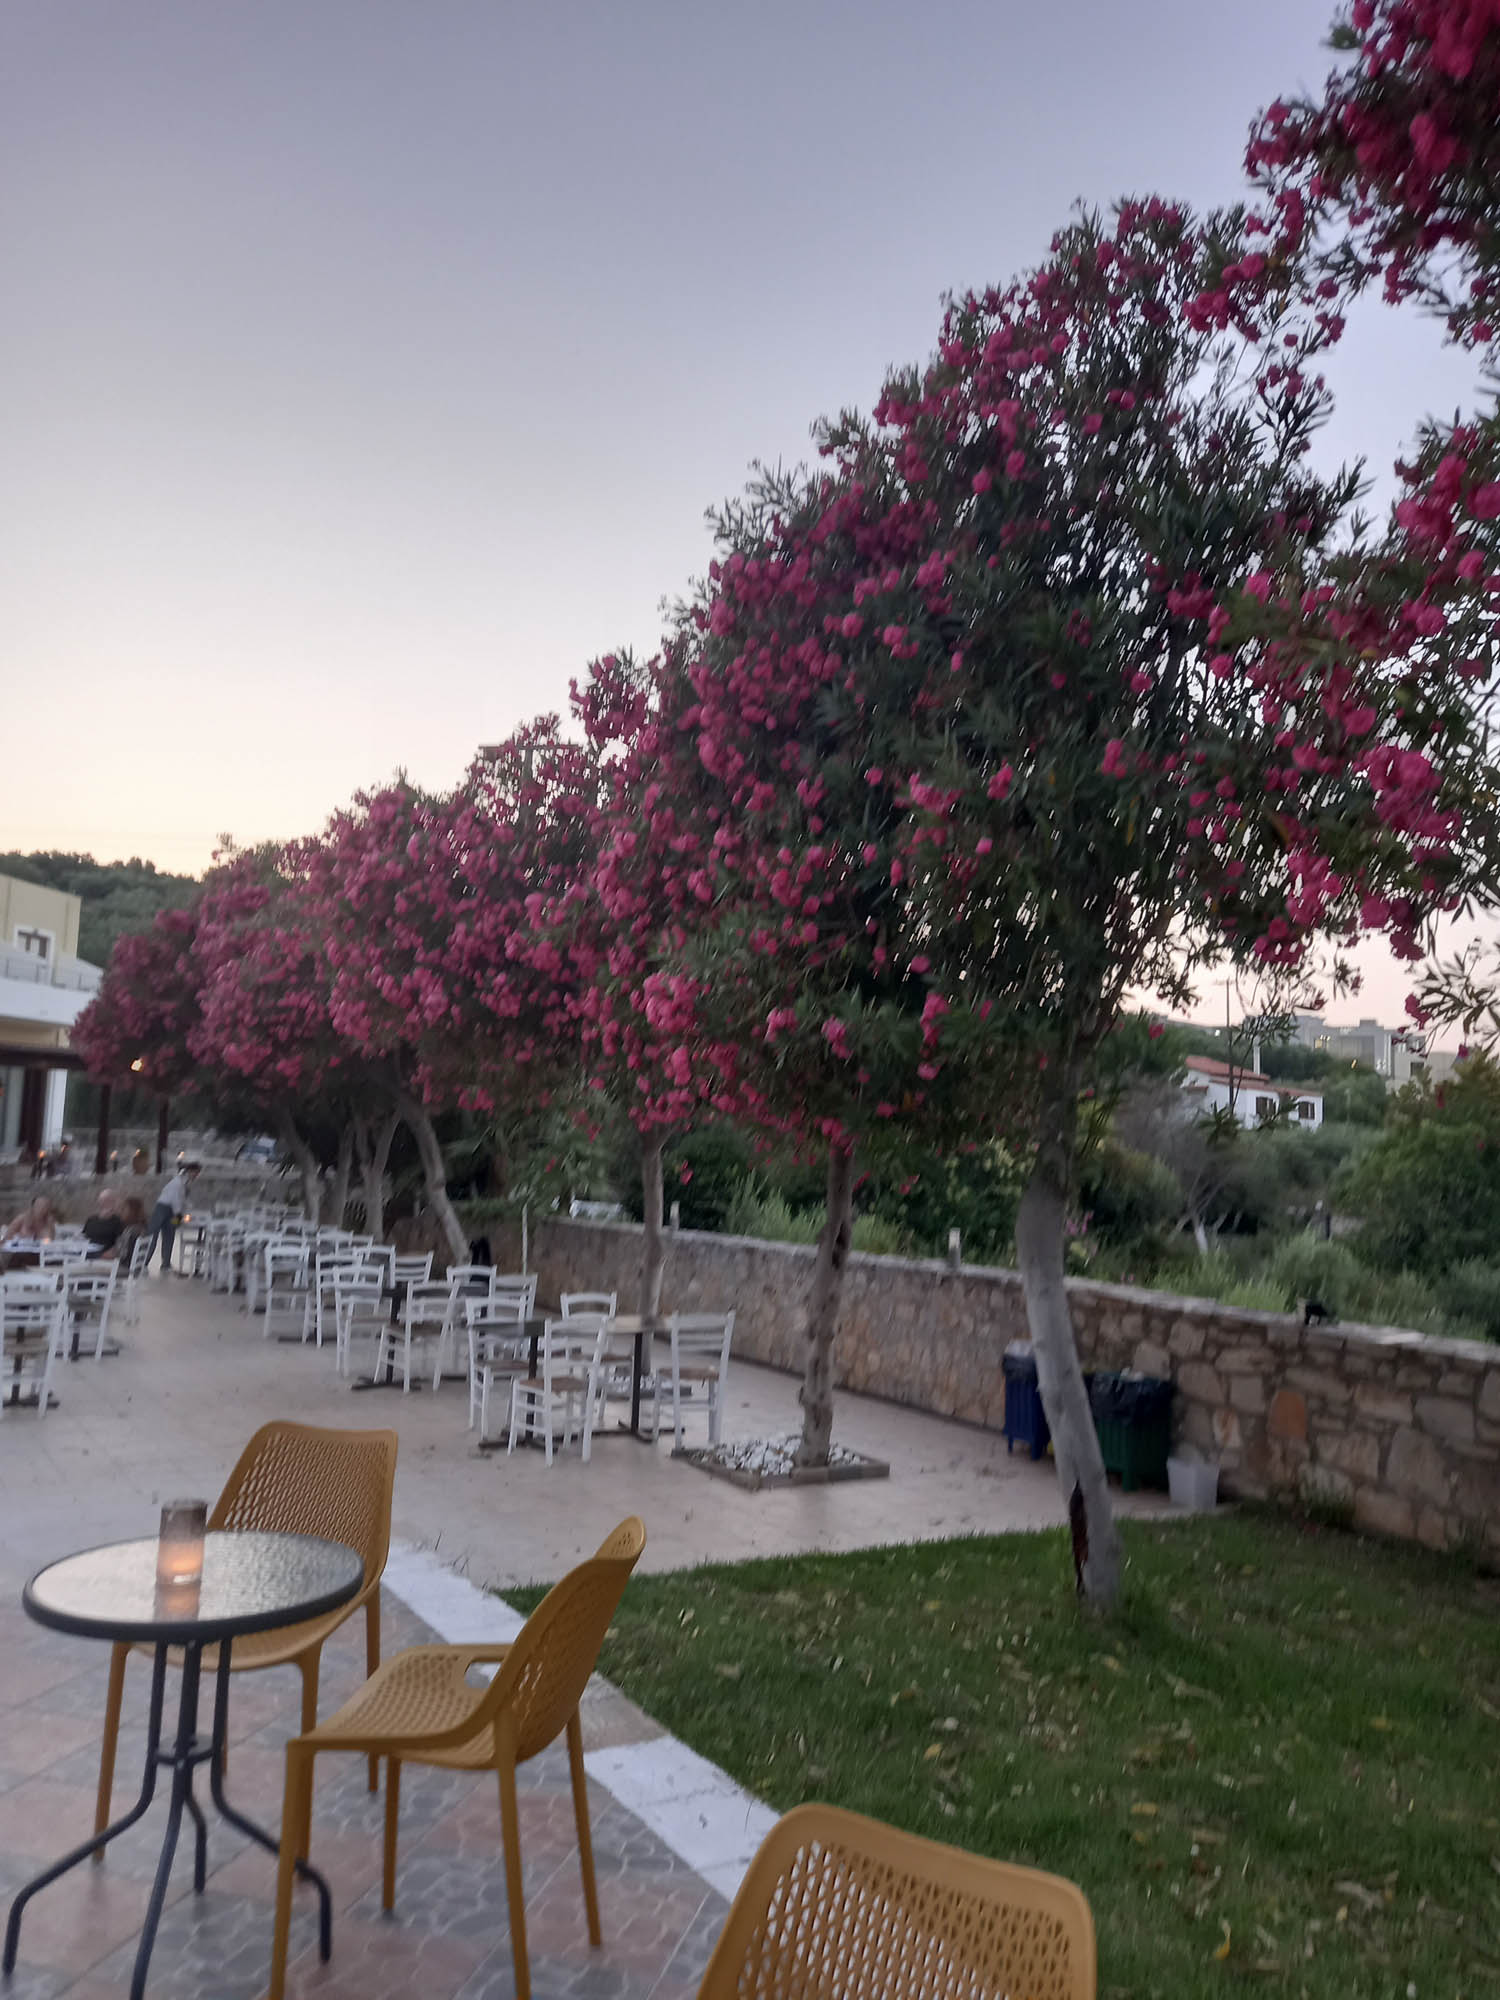 Kreta i kwitnące drzewa, aleja z różowymi kwiatami, promenada, tawerny kawiarenki, stoliki na wolnym powietrzu